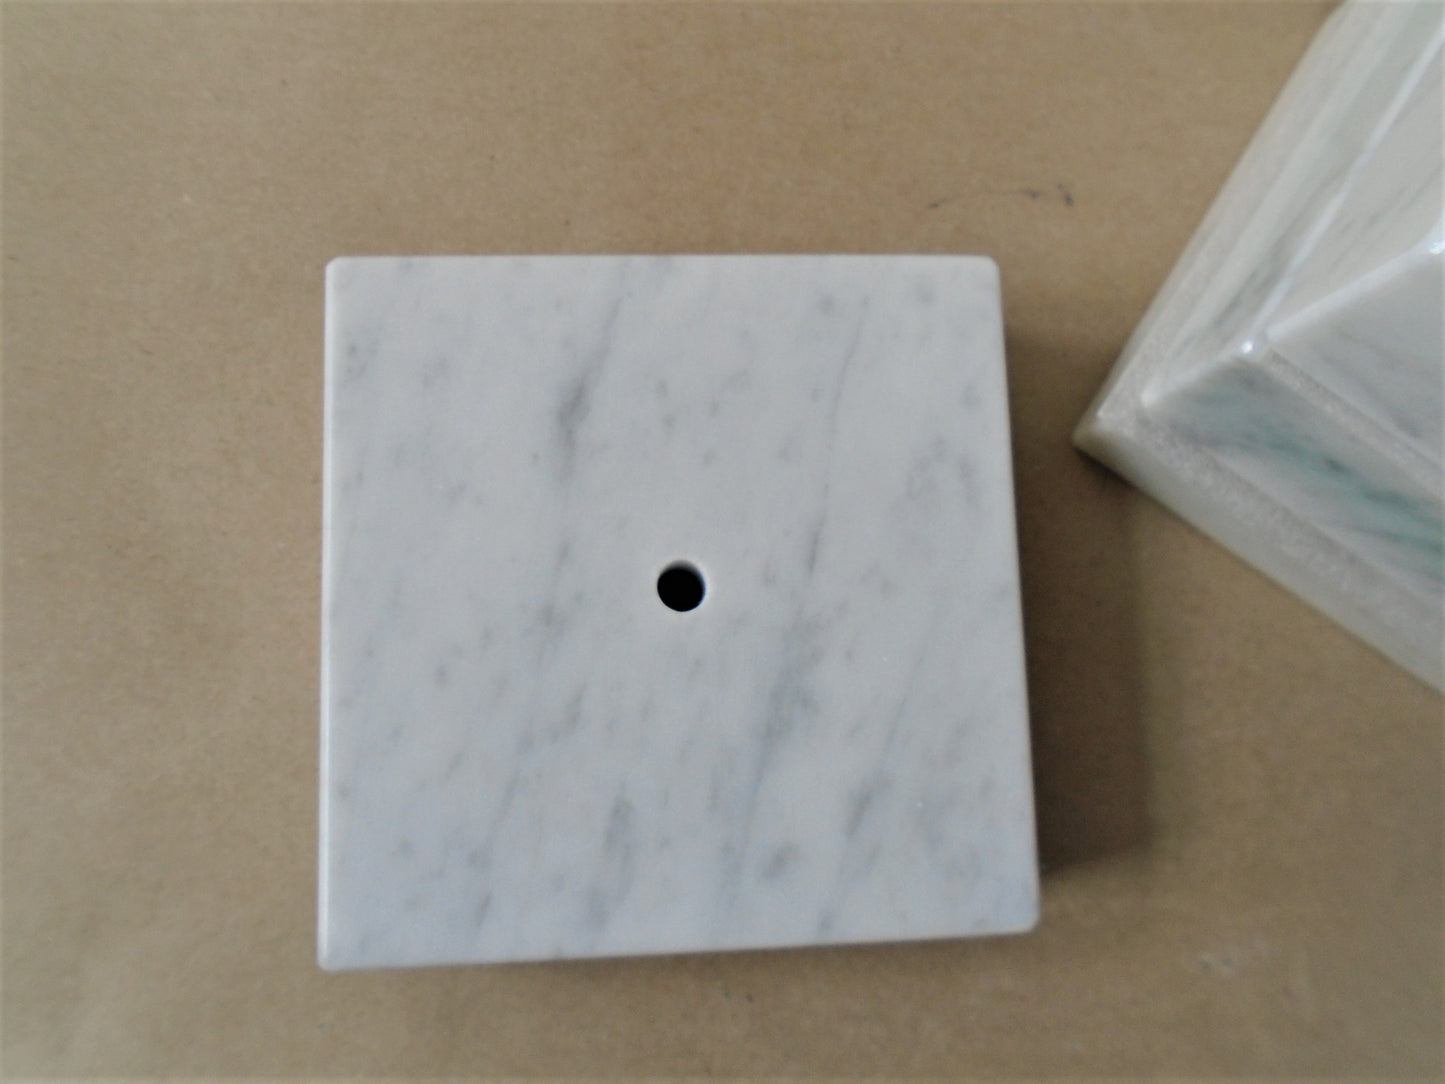 Carrara Marble Bases. 5 pieces